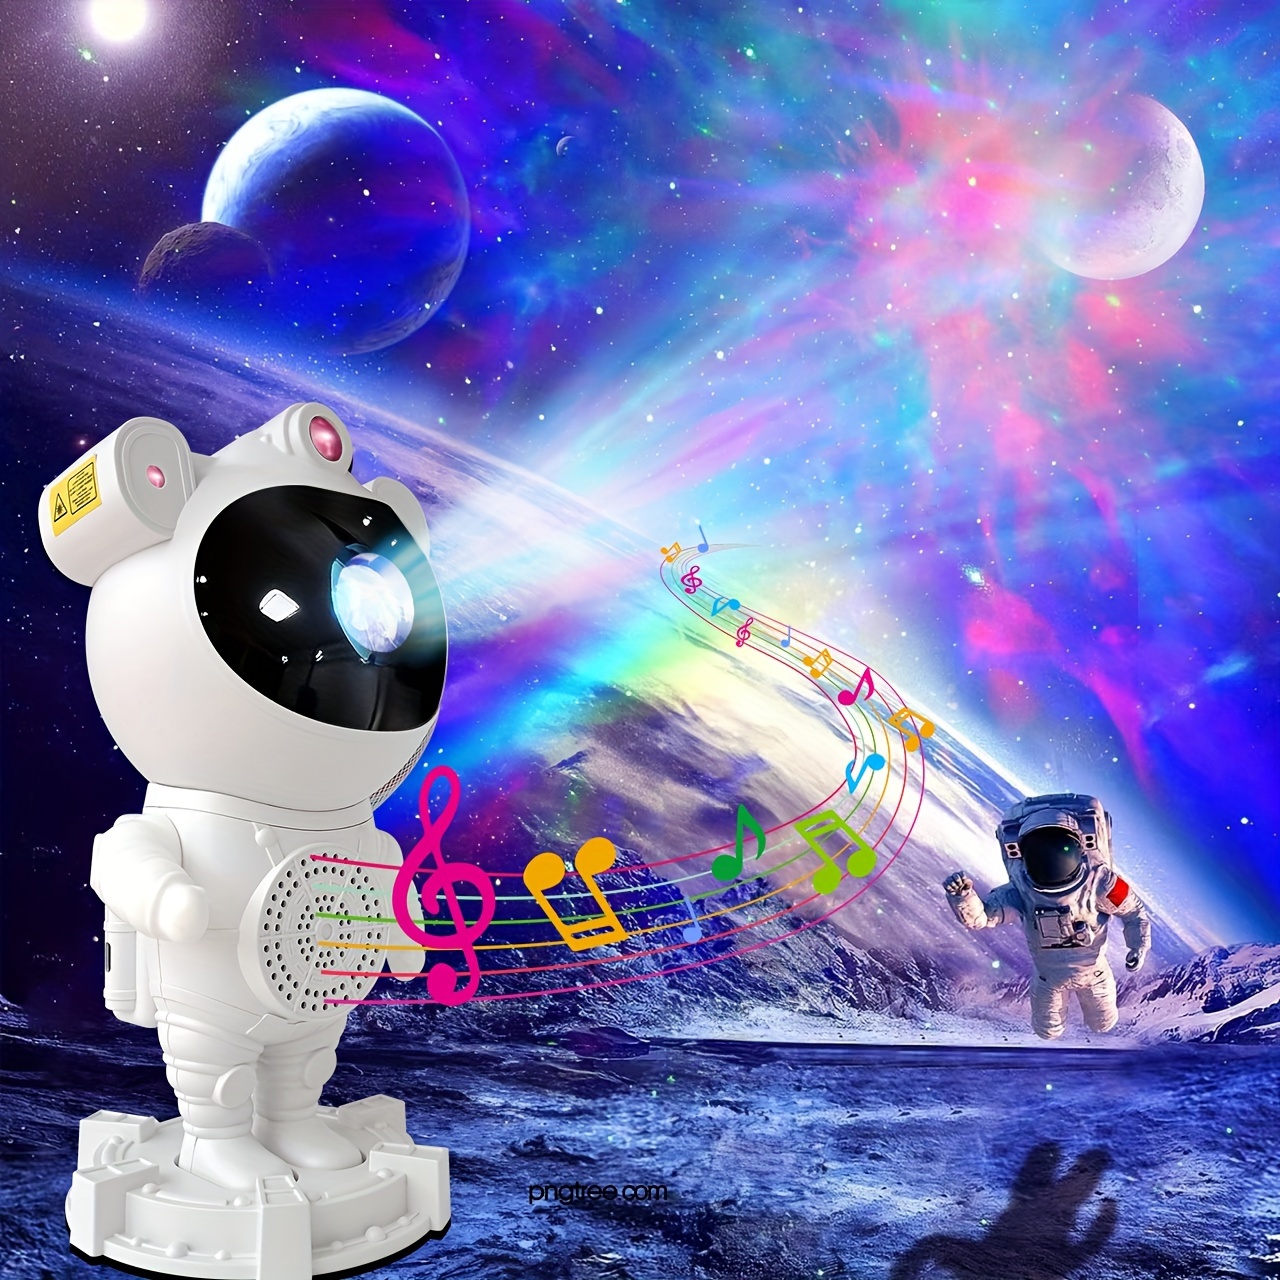 Proyector de Luz Nocturno Infantil Astronauta (USB)